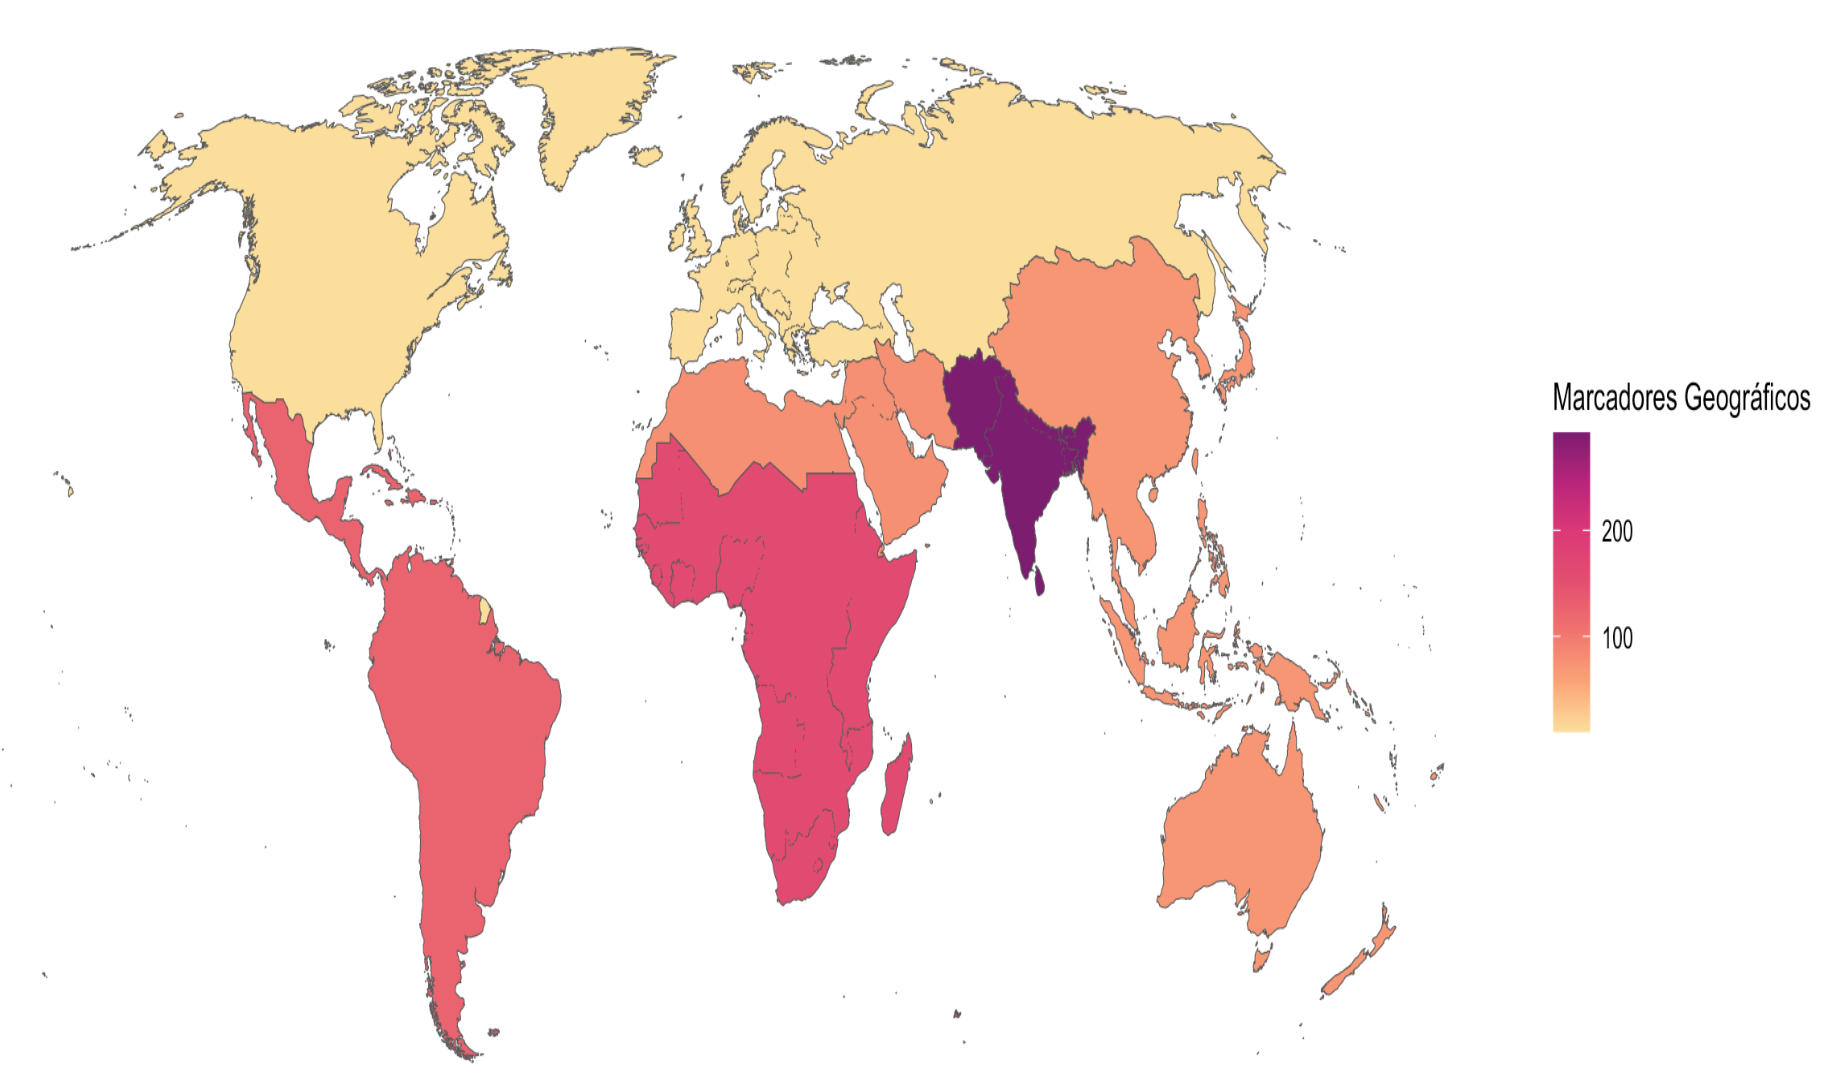 Mapa com a contagem de marcadores geográficos contidos em títulos de trabalhos em diferentes regiões do mundo. Quanto mais próximo do vermelho escuro, mais marcadores geográficos presentes nos títulos dos artigos produzidos na região